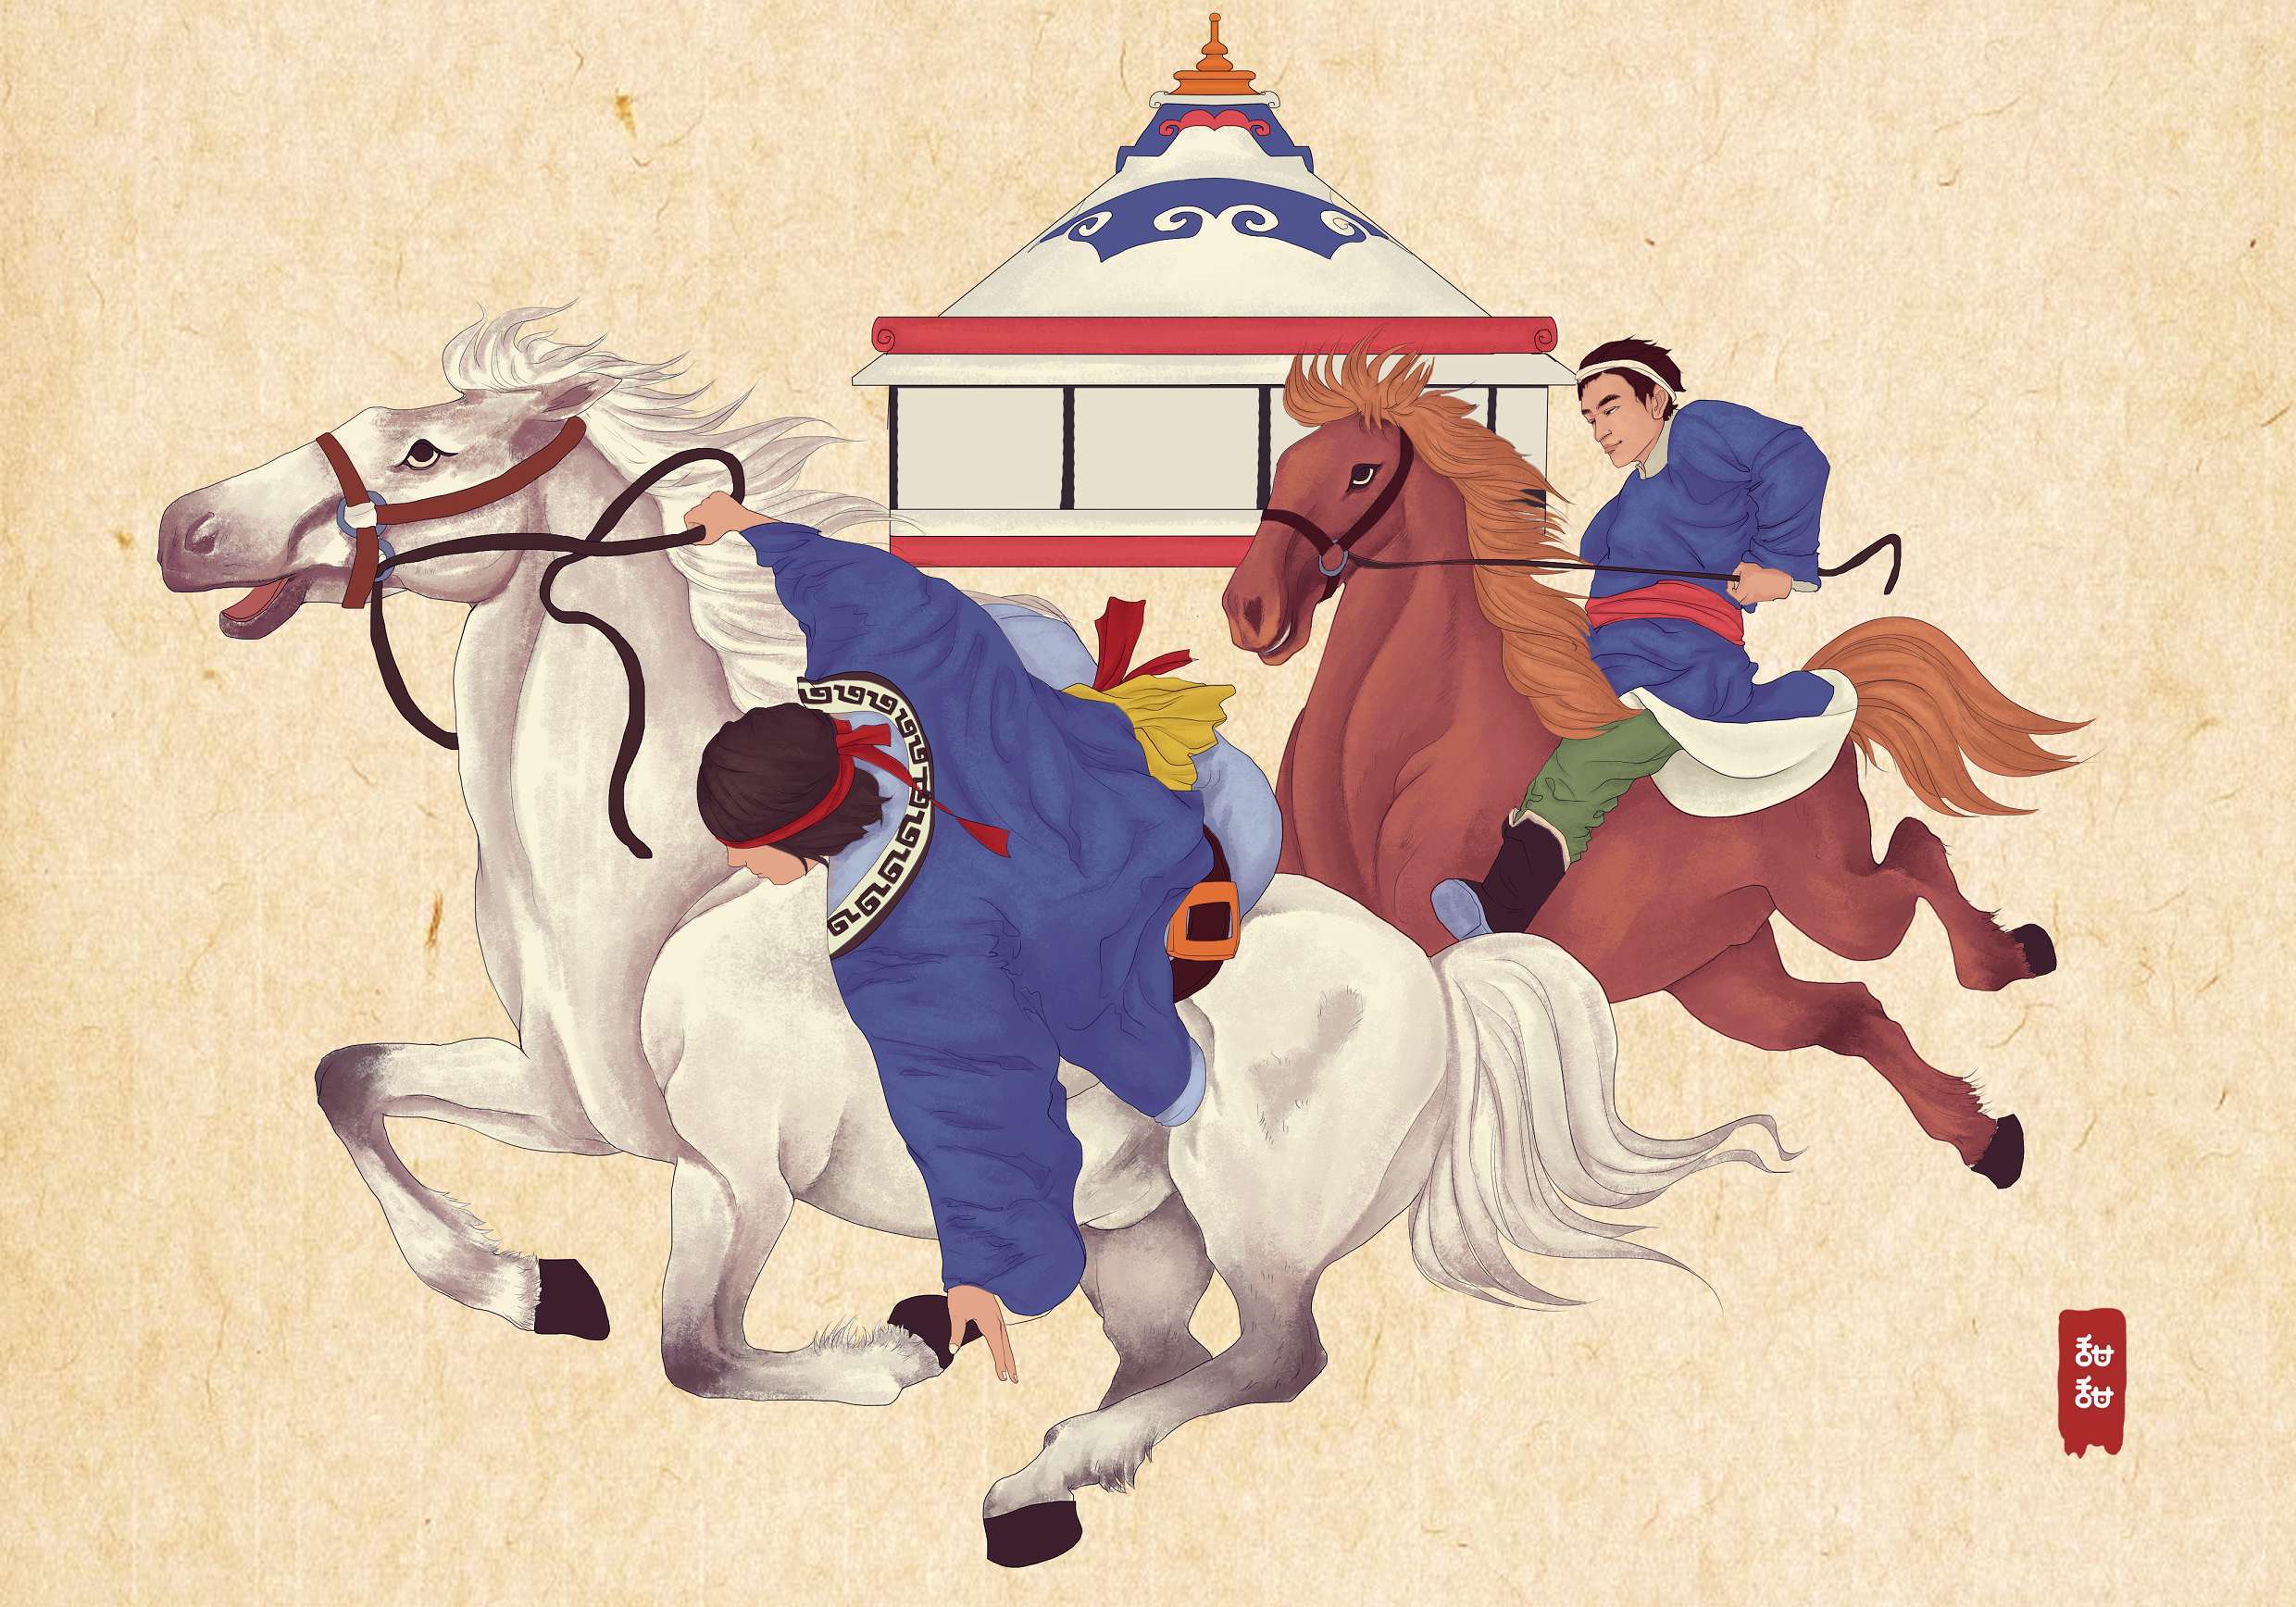 画《成吉思汗》的蒙古国卡通绘本漫画家-草原元素---蒙古元素 Mongolia Elements